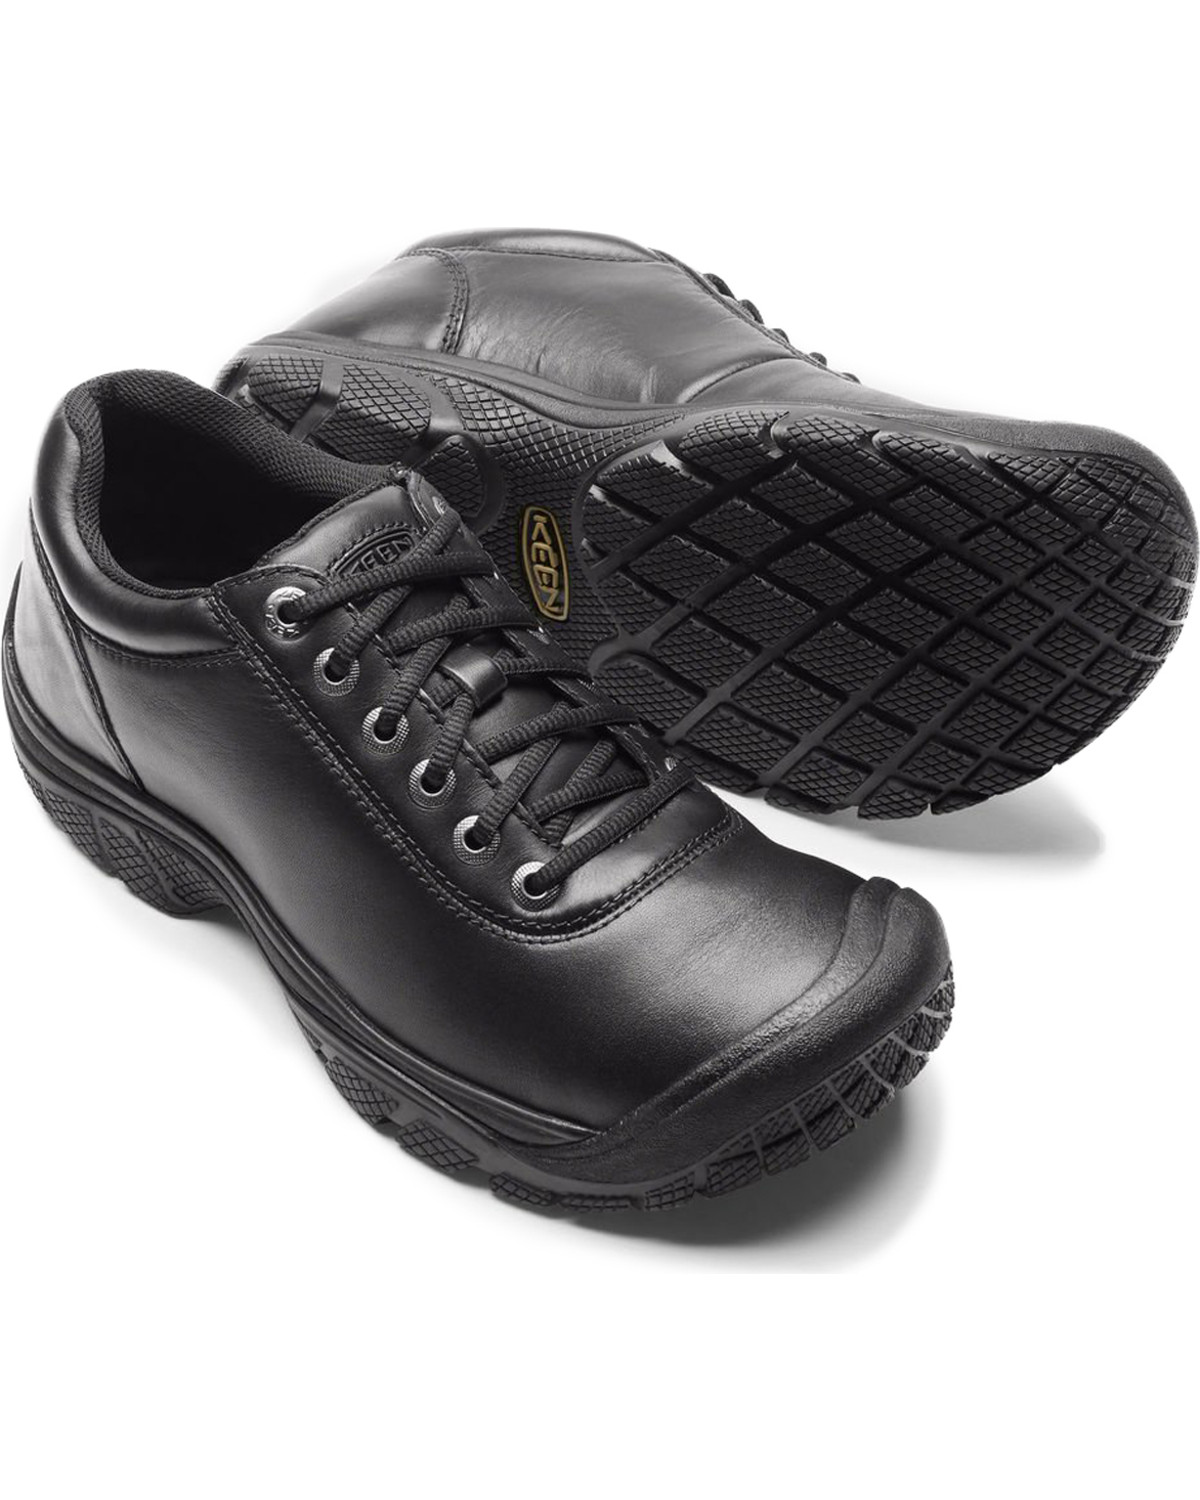 men's water resistant work shoes